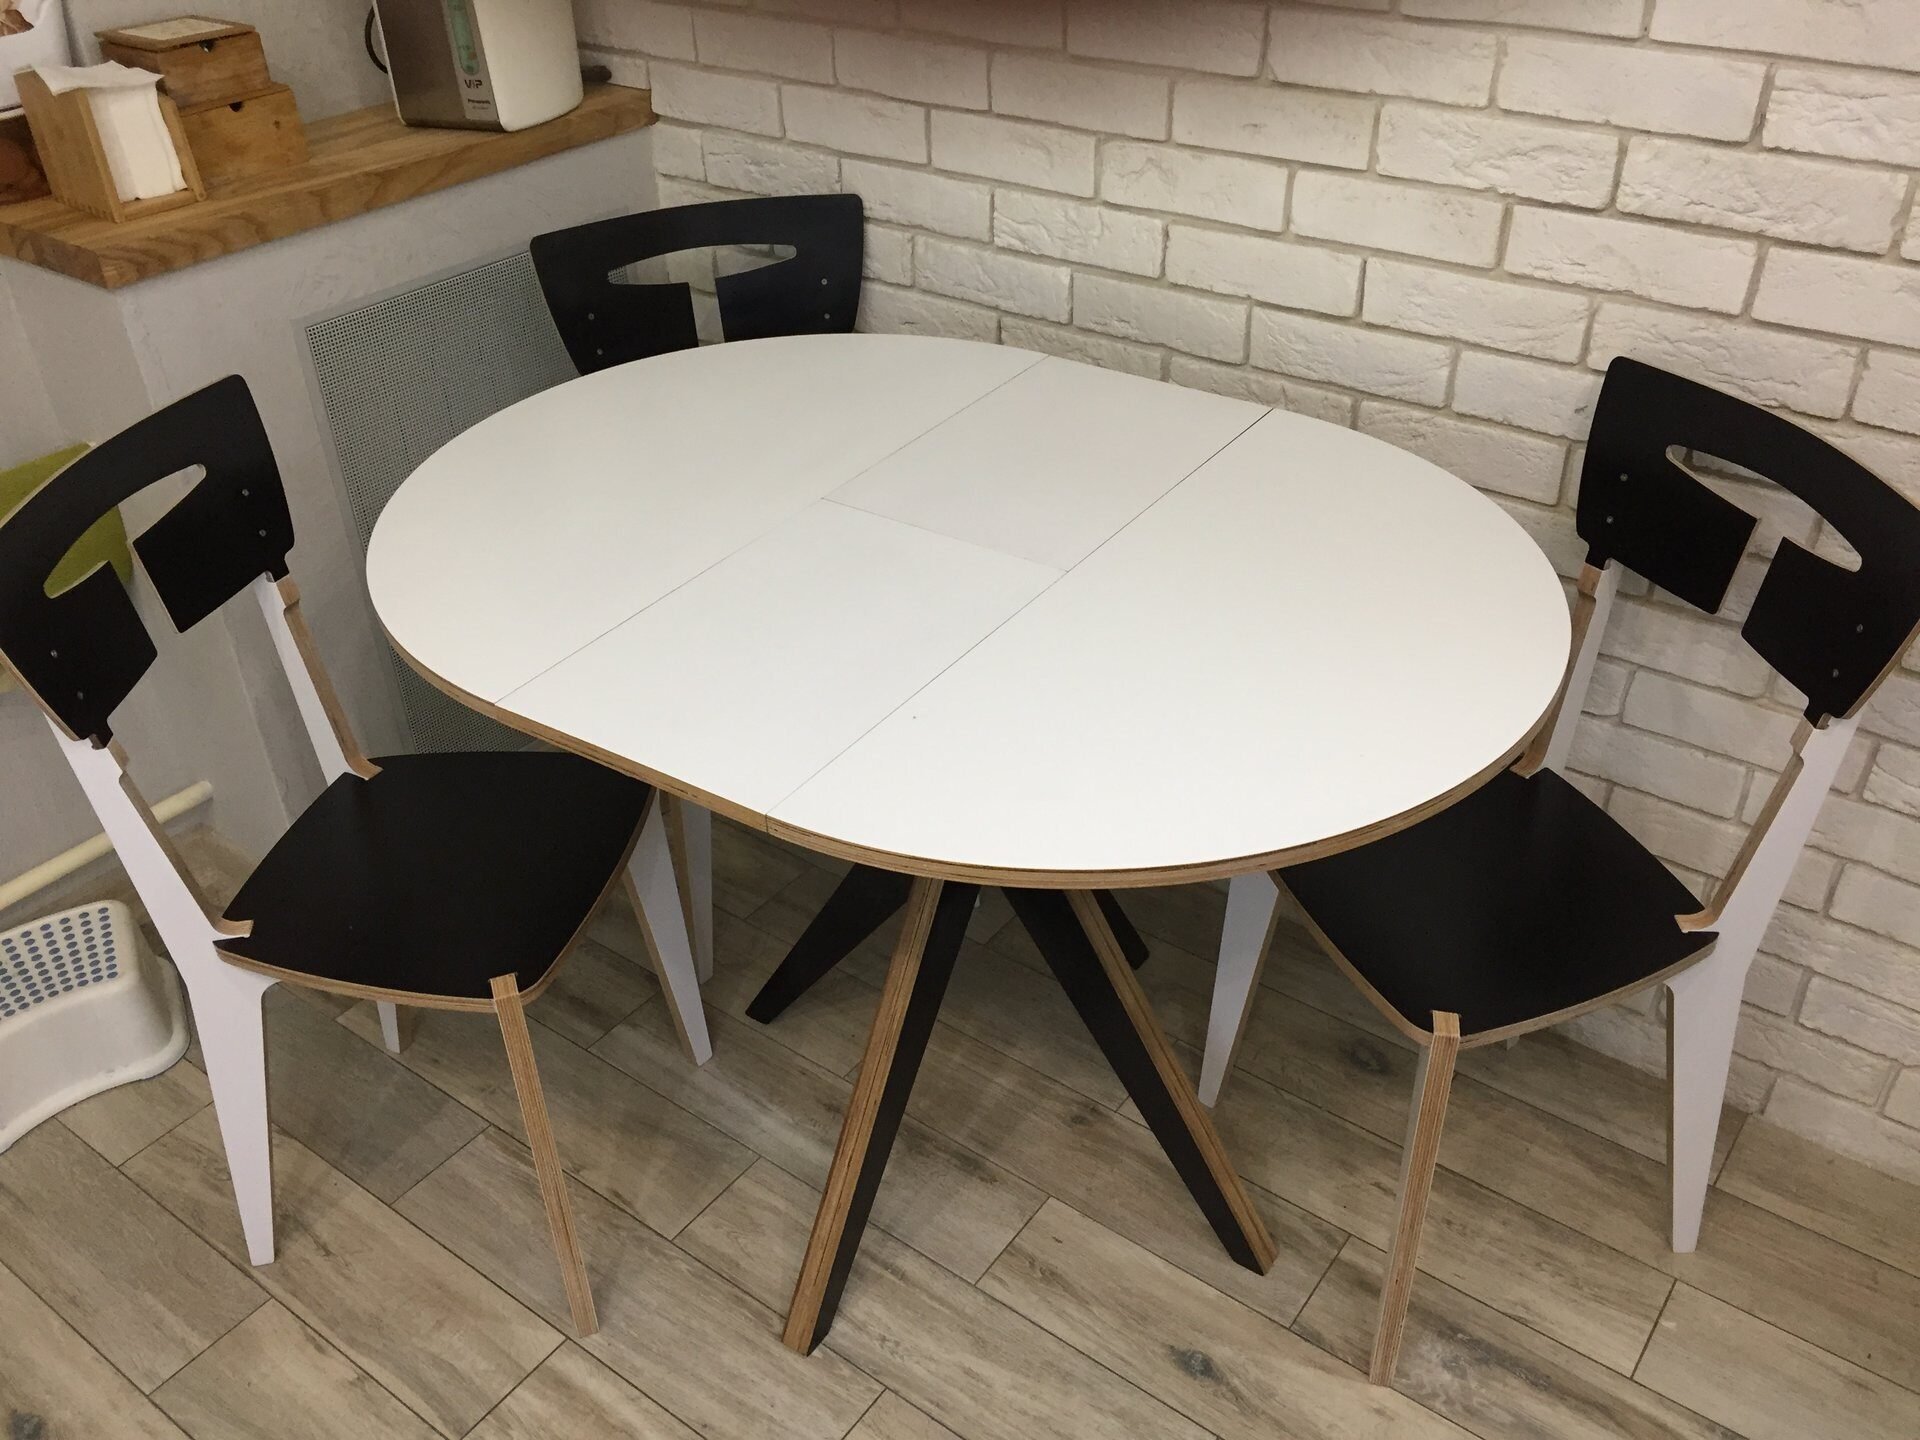 Кухонный стол раздвижной. Кухонный стол Mertuno 110. Стол 90х70 Скандинавия. Круглый стол s-3 SL-NBI раскладной, 80/2x50. Стол на кухня раздвижноц.